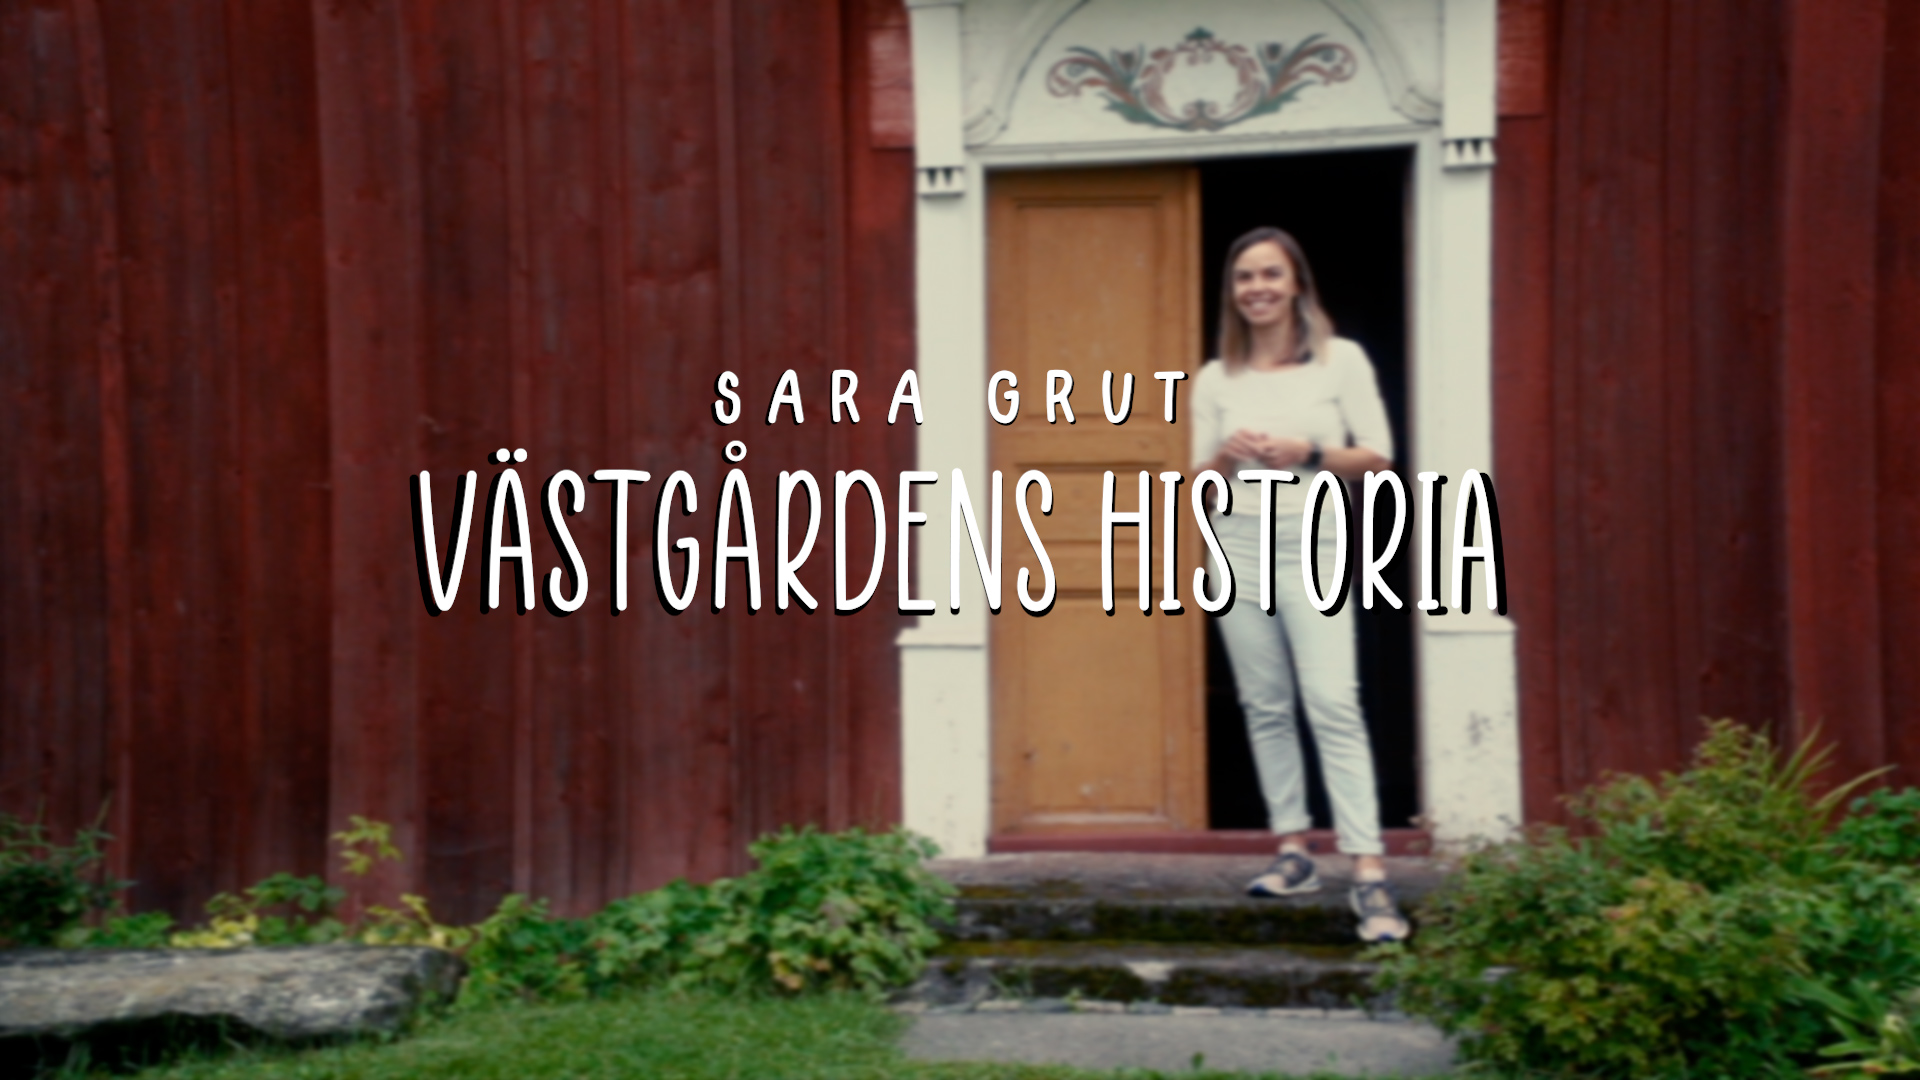 Sara Grut, Västgårdens historia. 